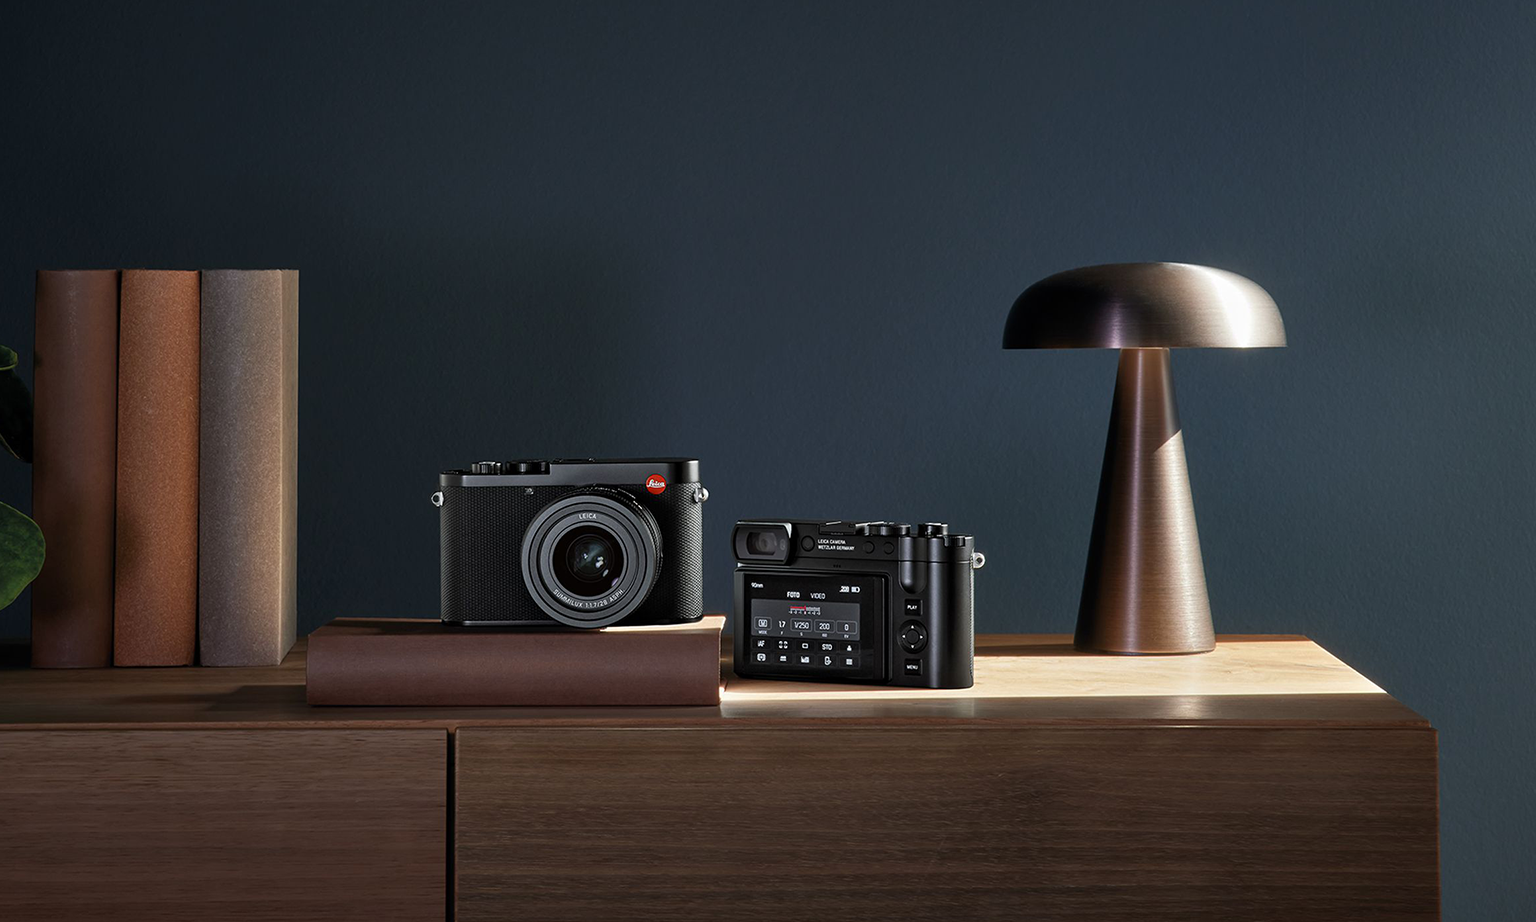 紧凑机型新王者，Leica 推出 Q3 全画幅相机